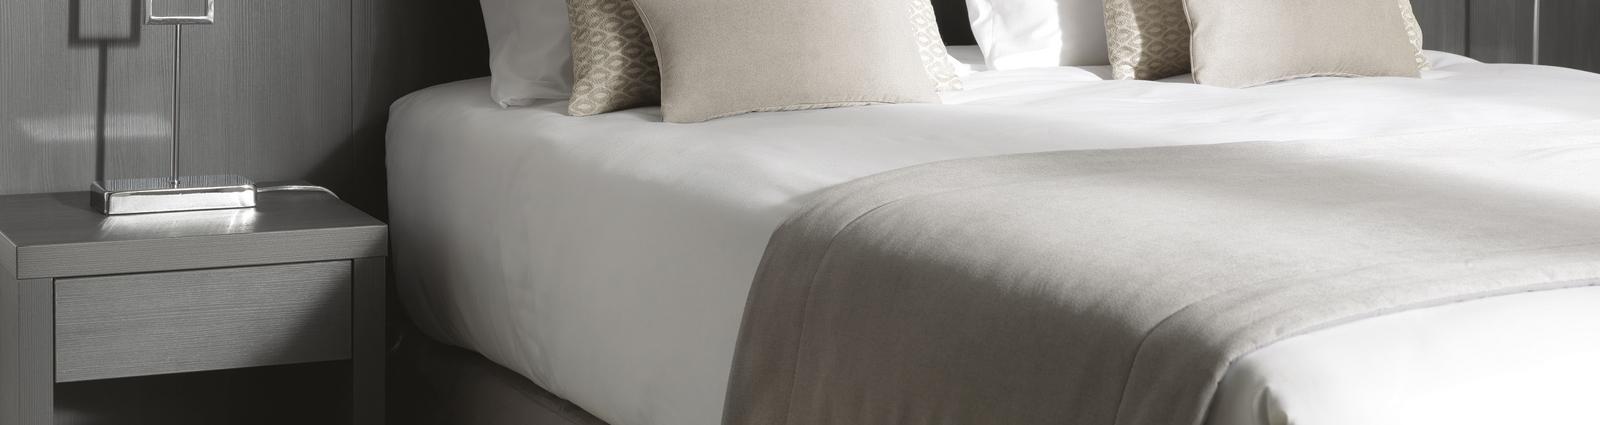 Die Qualität der Bettwaren ist für Gäste bei der Bewertung eines Zimmers das Kriterium Nr. 1, und das umso mehr, seit es Reservierungswebsites und Kundenrezensionen gibt. Deshalb hat HOTEL MEGASTORE für Sie die bekanntesten Marken für Bettwaren der Spitzenklasse ausgesucht: EPEDA, BULTEX, SIMMONS und TRECA. Hier bekommen Sie speziell für das Hotelgewerbe konzipierte Matratzen, mit kompletter Ummantelung für eine bequeme, verstärkte Basis und mit geringerem Gewicht zur erleichterten Handhabung. Auf alle unsere Matratzen gibt es 5 Jahre Garantie. Um die Belegung Ihrer Zimmer zu optimieren, bieten wir Ihnen außerdem die Möglichkeit, Ihre Doppelbetten in 2 Einzelbetten zu verwandeln oder umgekehrt - über Reißverschluss- oder Klettverschluss-Sets.